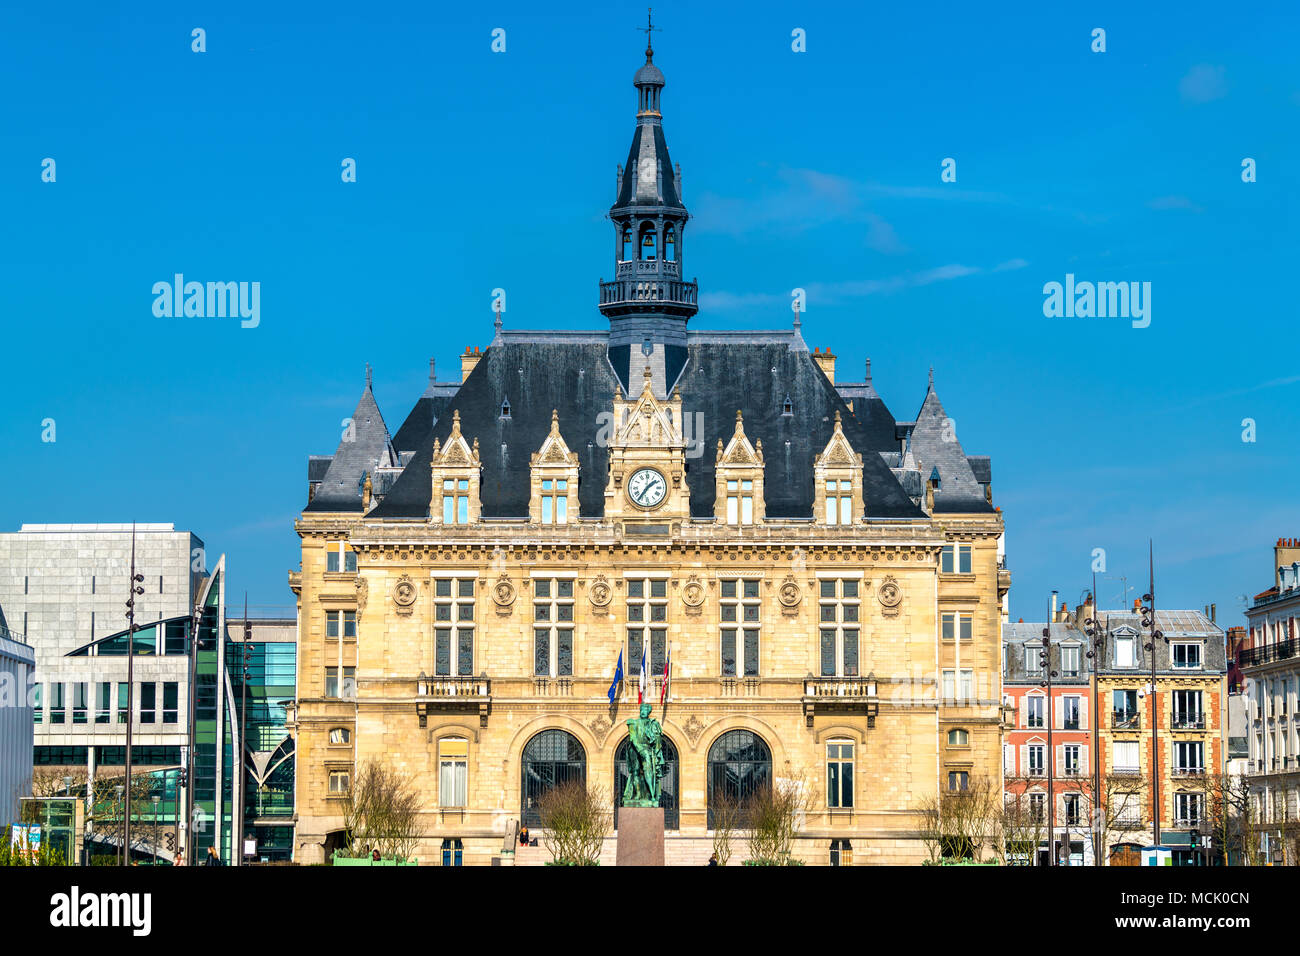 Mairie de Vincennes, the town hall of Vincennes near Paris, France Stock Photo